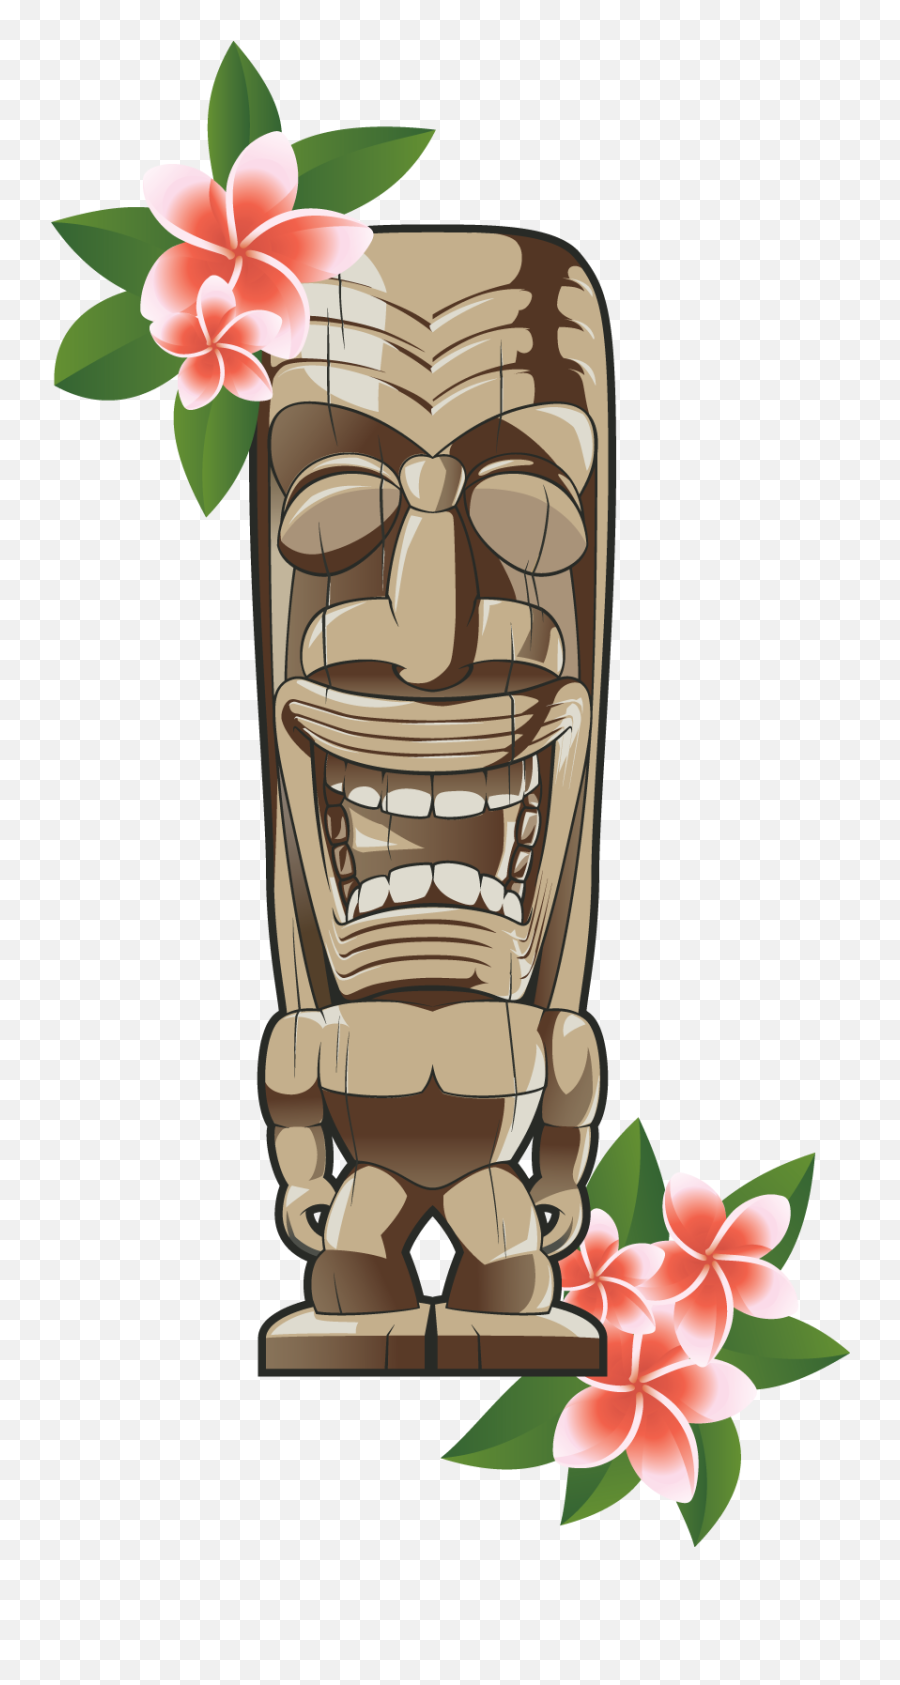 Hawaiian Tiki Transparent Background - Hawaiian Tiki Transparent Background Emoji,Totem Pole Emoji